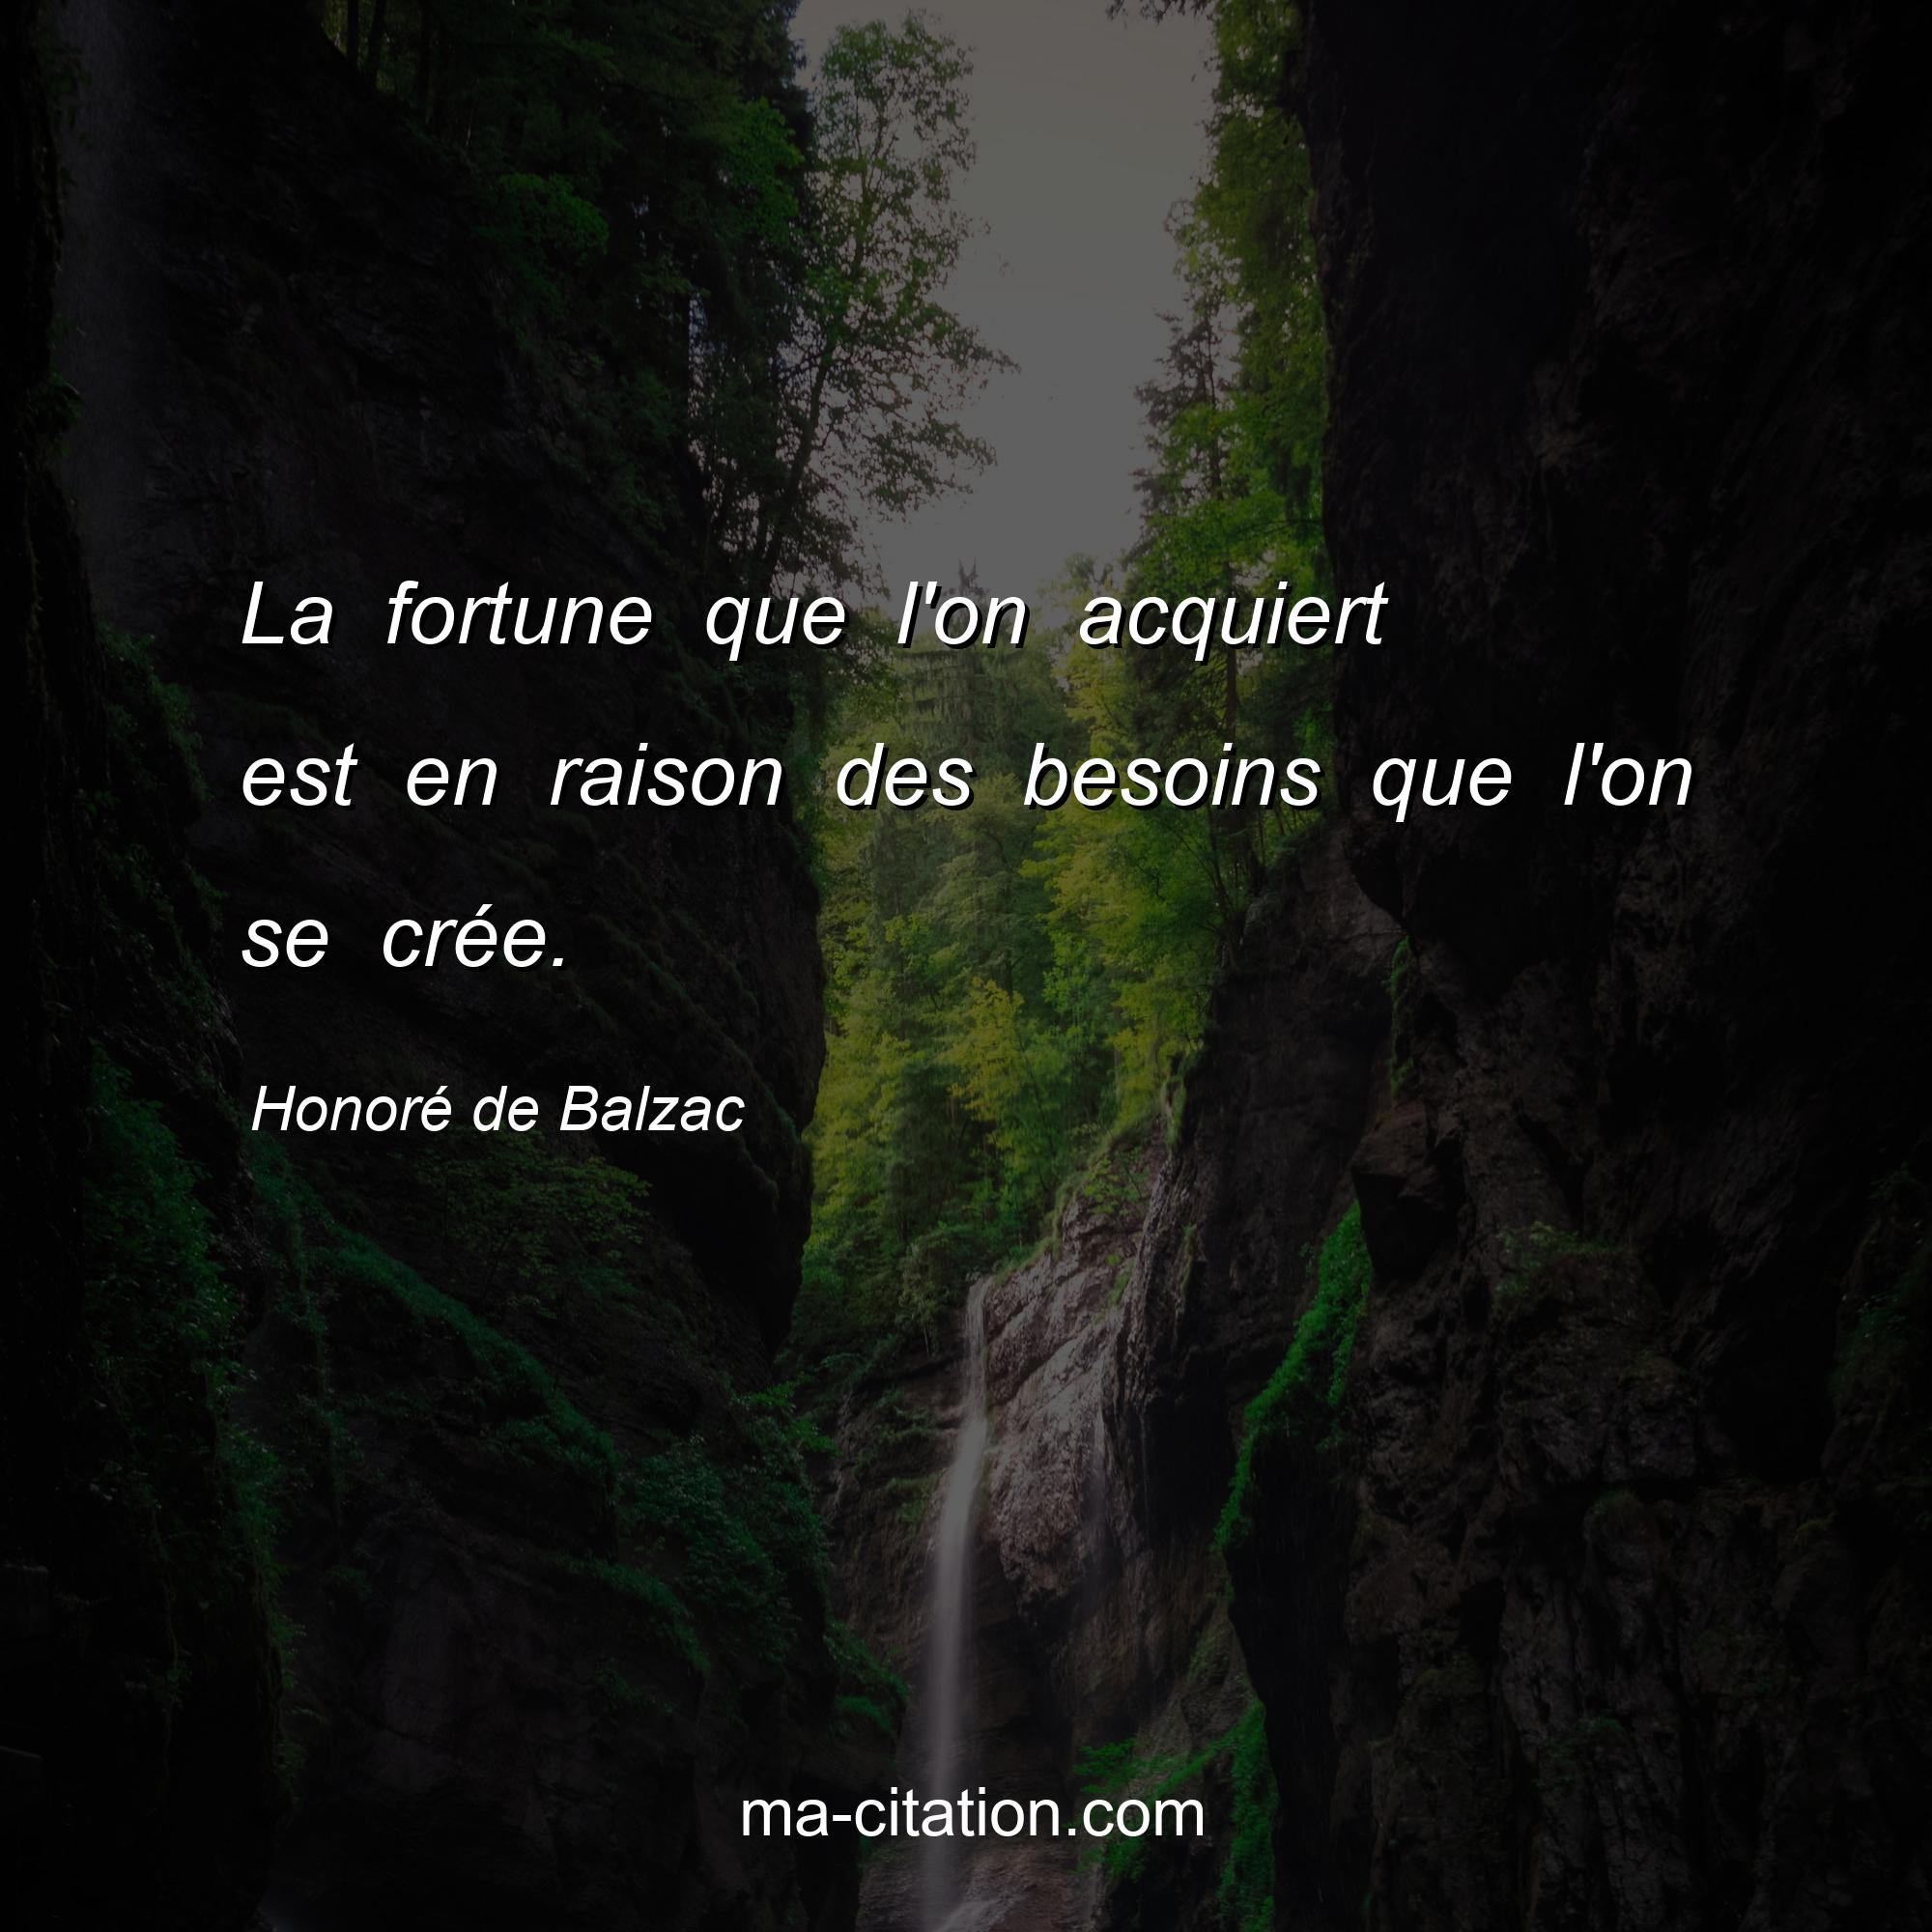 Honoré de Balzac : La fortune que l'on acquiert est en raison des besoins que l'on se crée.